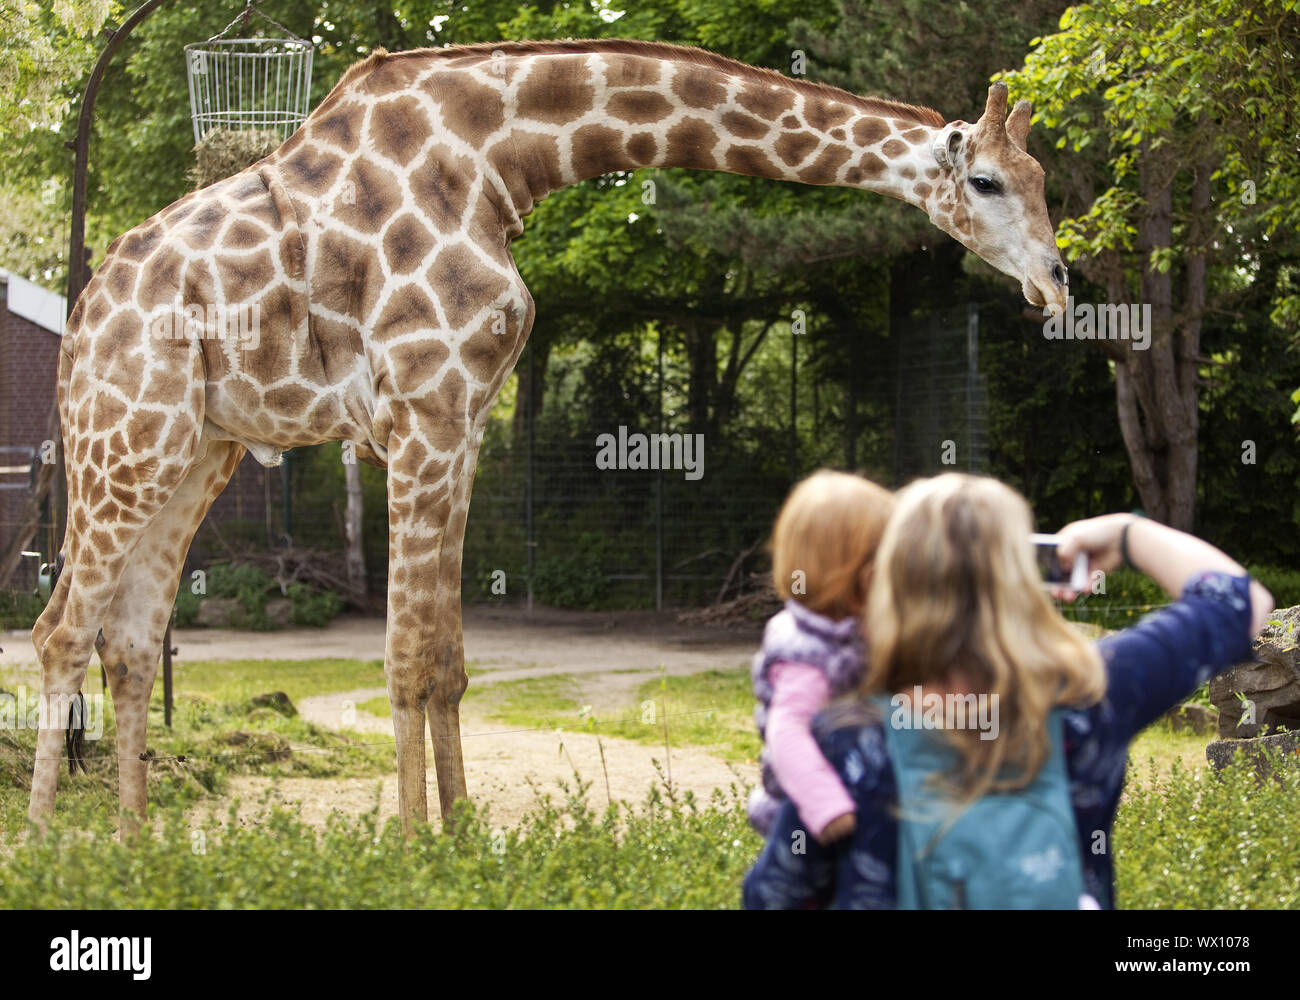 Jirafa (Giraffa angoleño) madre con hija tomando fotos de la jirafa en un zoológico, Dortmund Europa Foto de stock